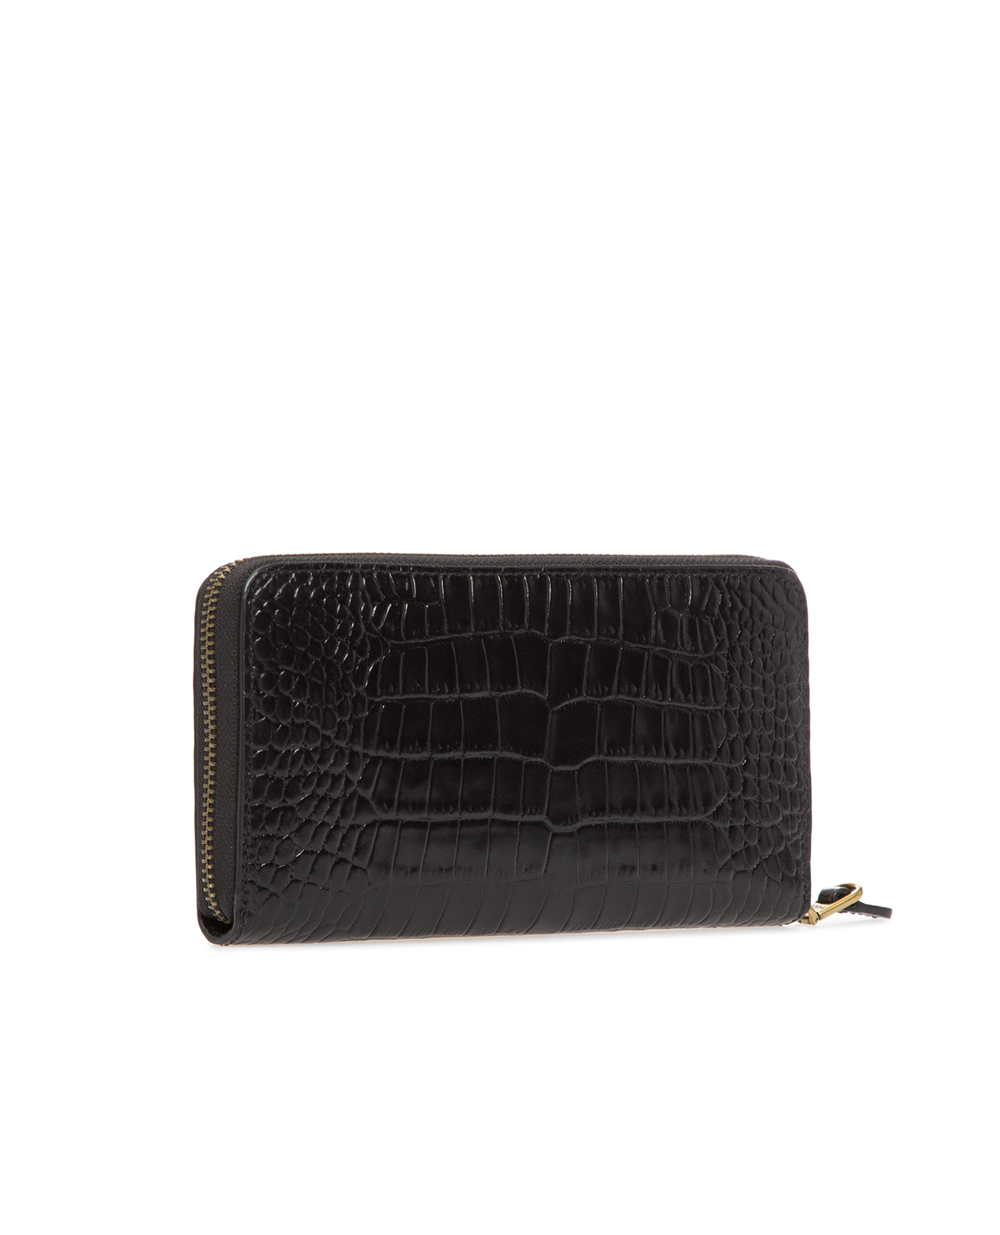 Кожаный кошелек Polo Ralph Lauren 427750105002, черный цвет • Купить в интернет-магазине Kameron